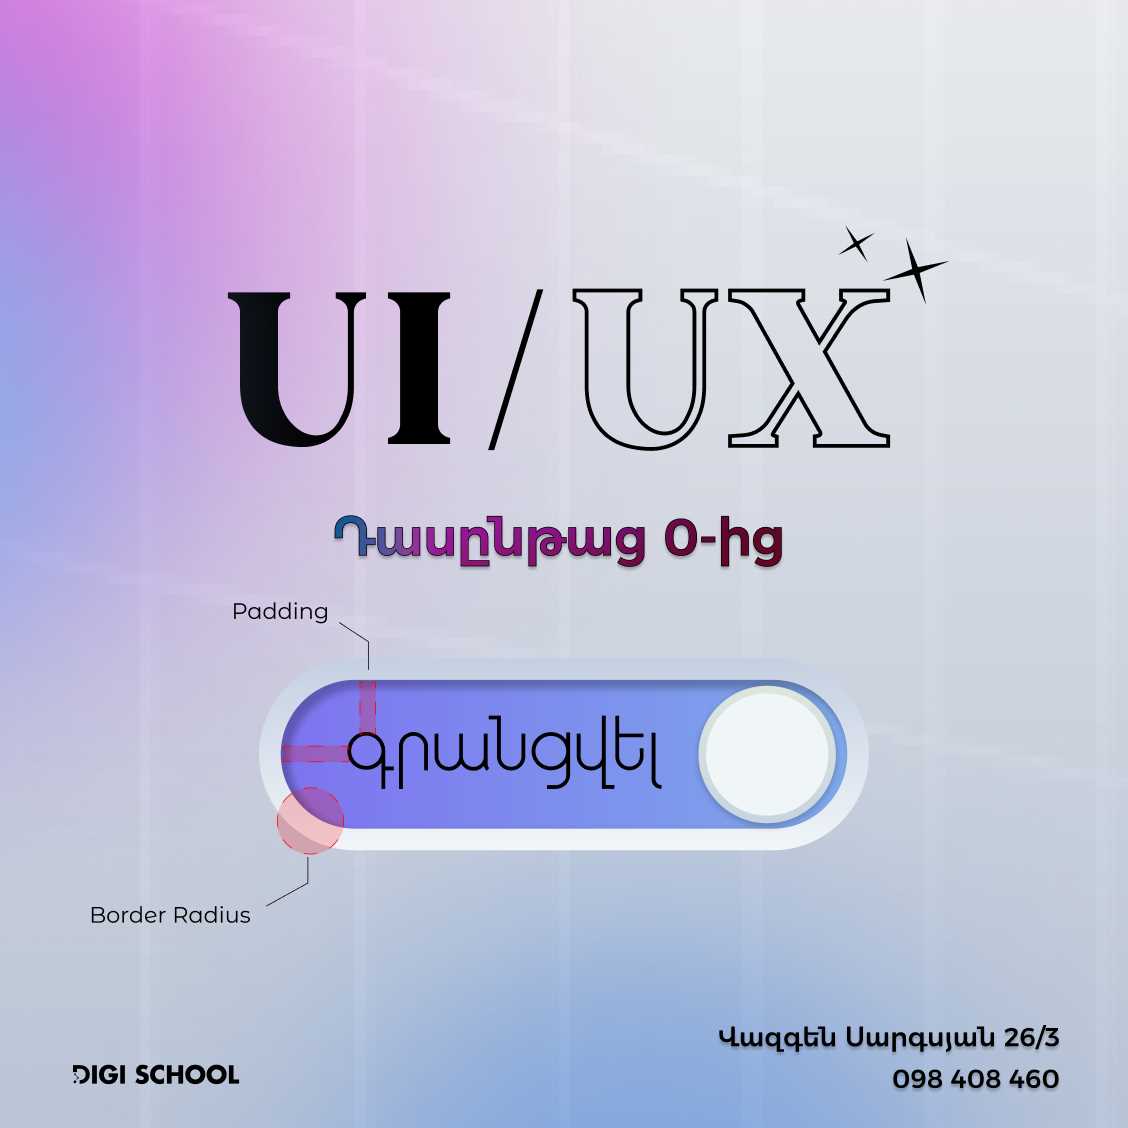 UI/UX դիզայնի դասընթաց 0-ից